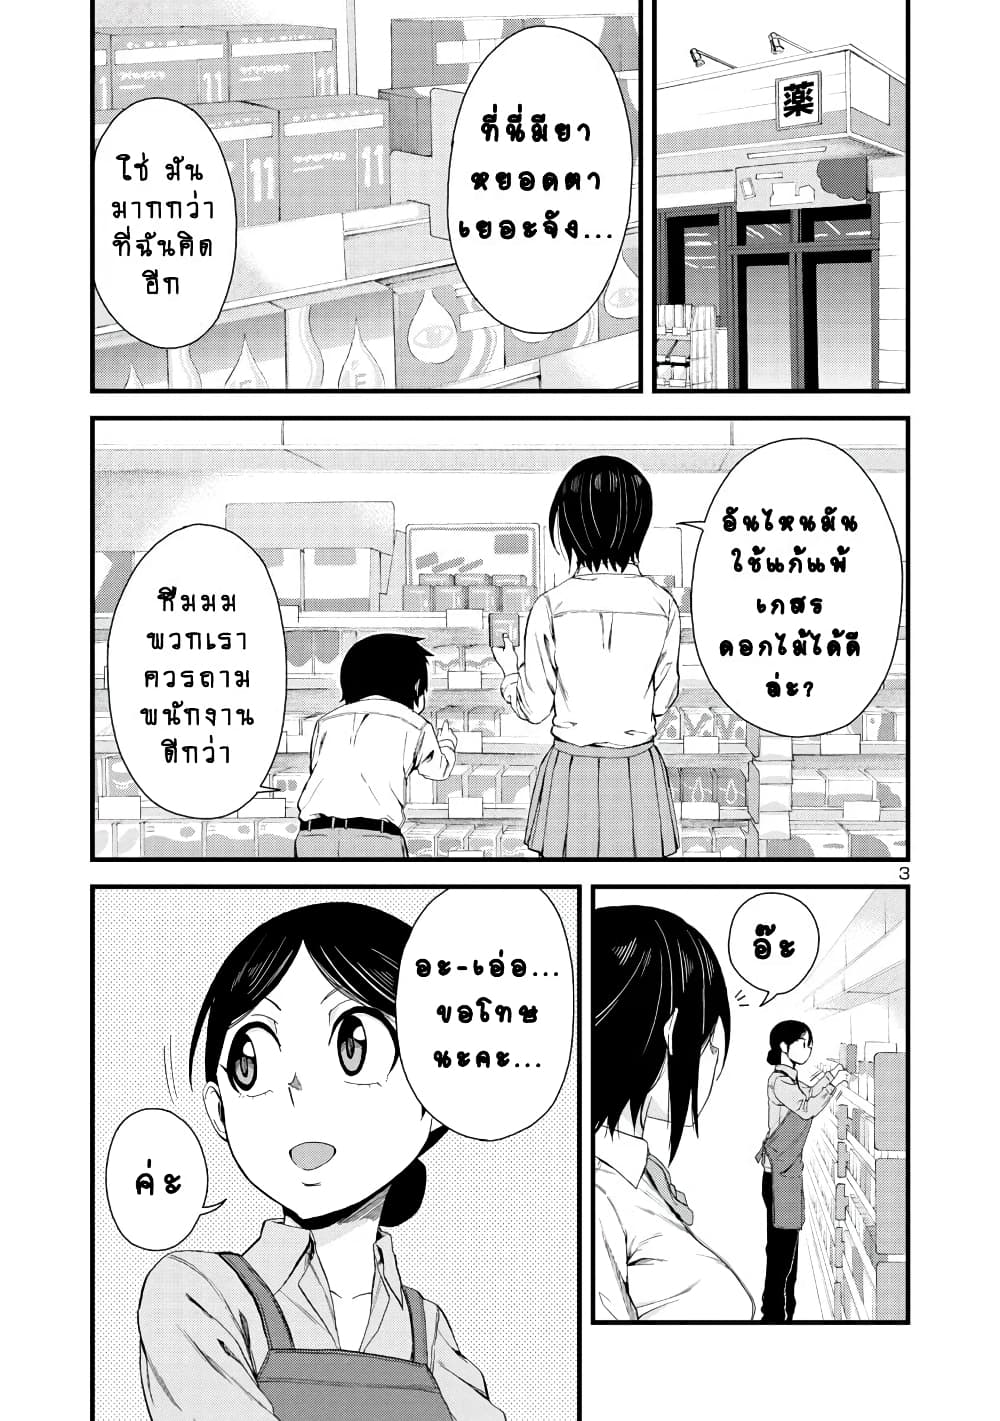 Hitomi-chan Is Shy With Strangers วันๆของน้องฮิโตมิก็เป็นแบบนี้แหล่ะ 19-19